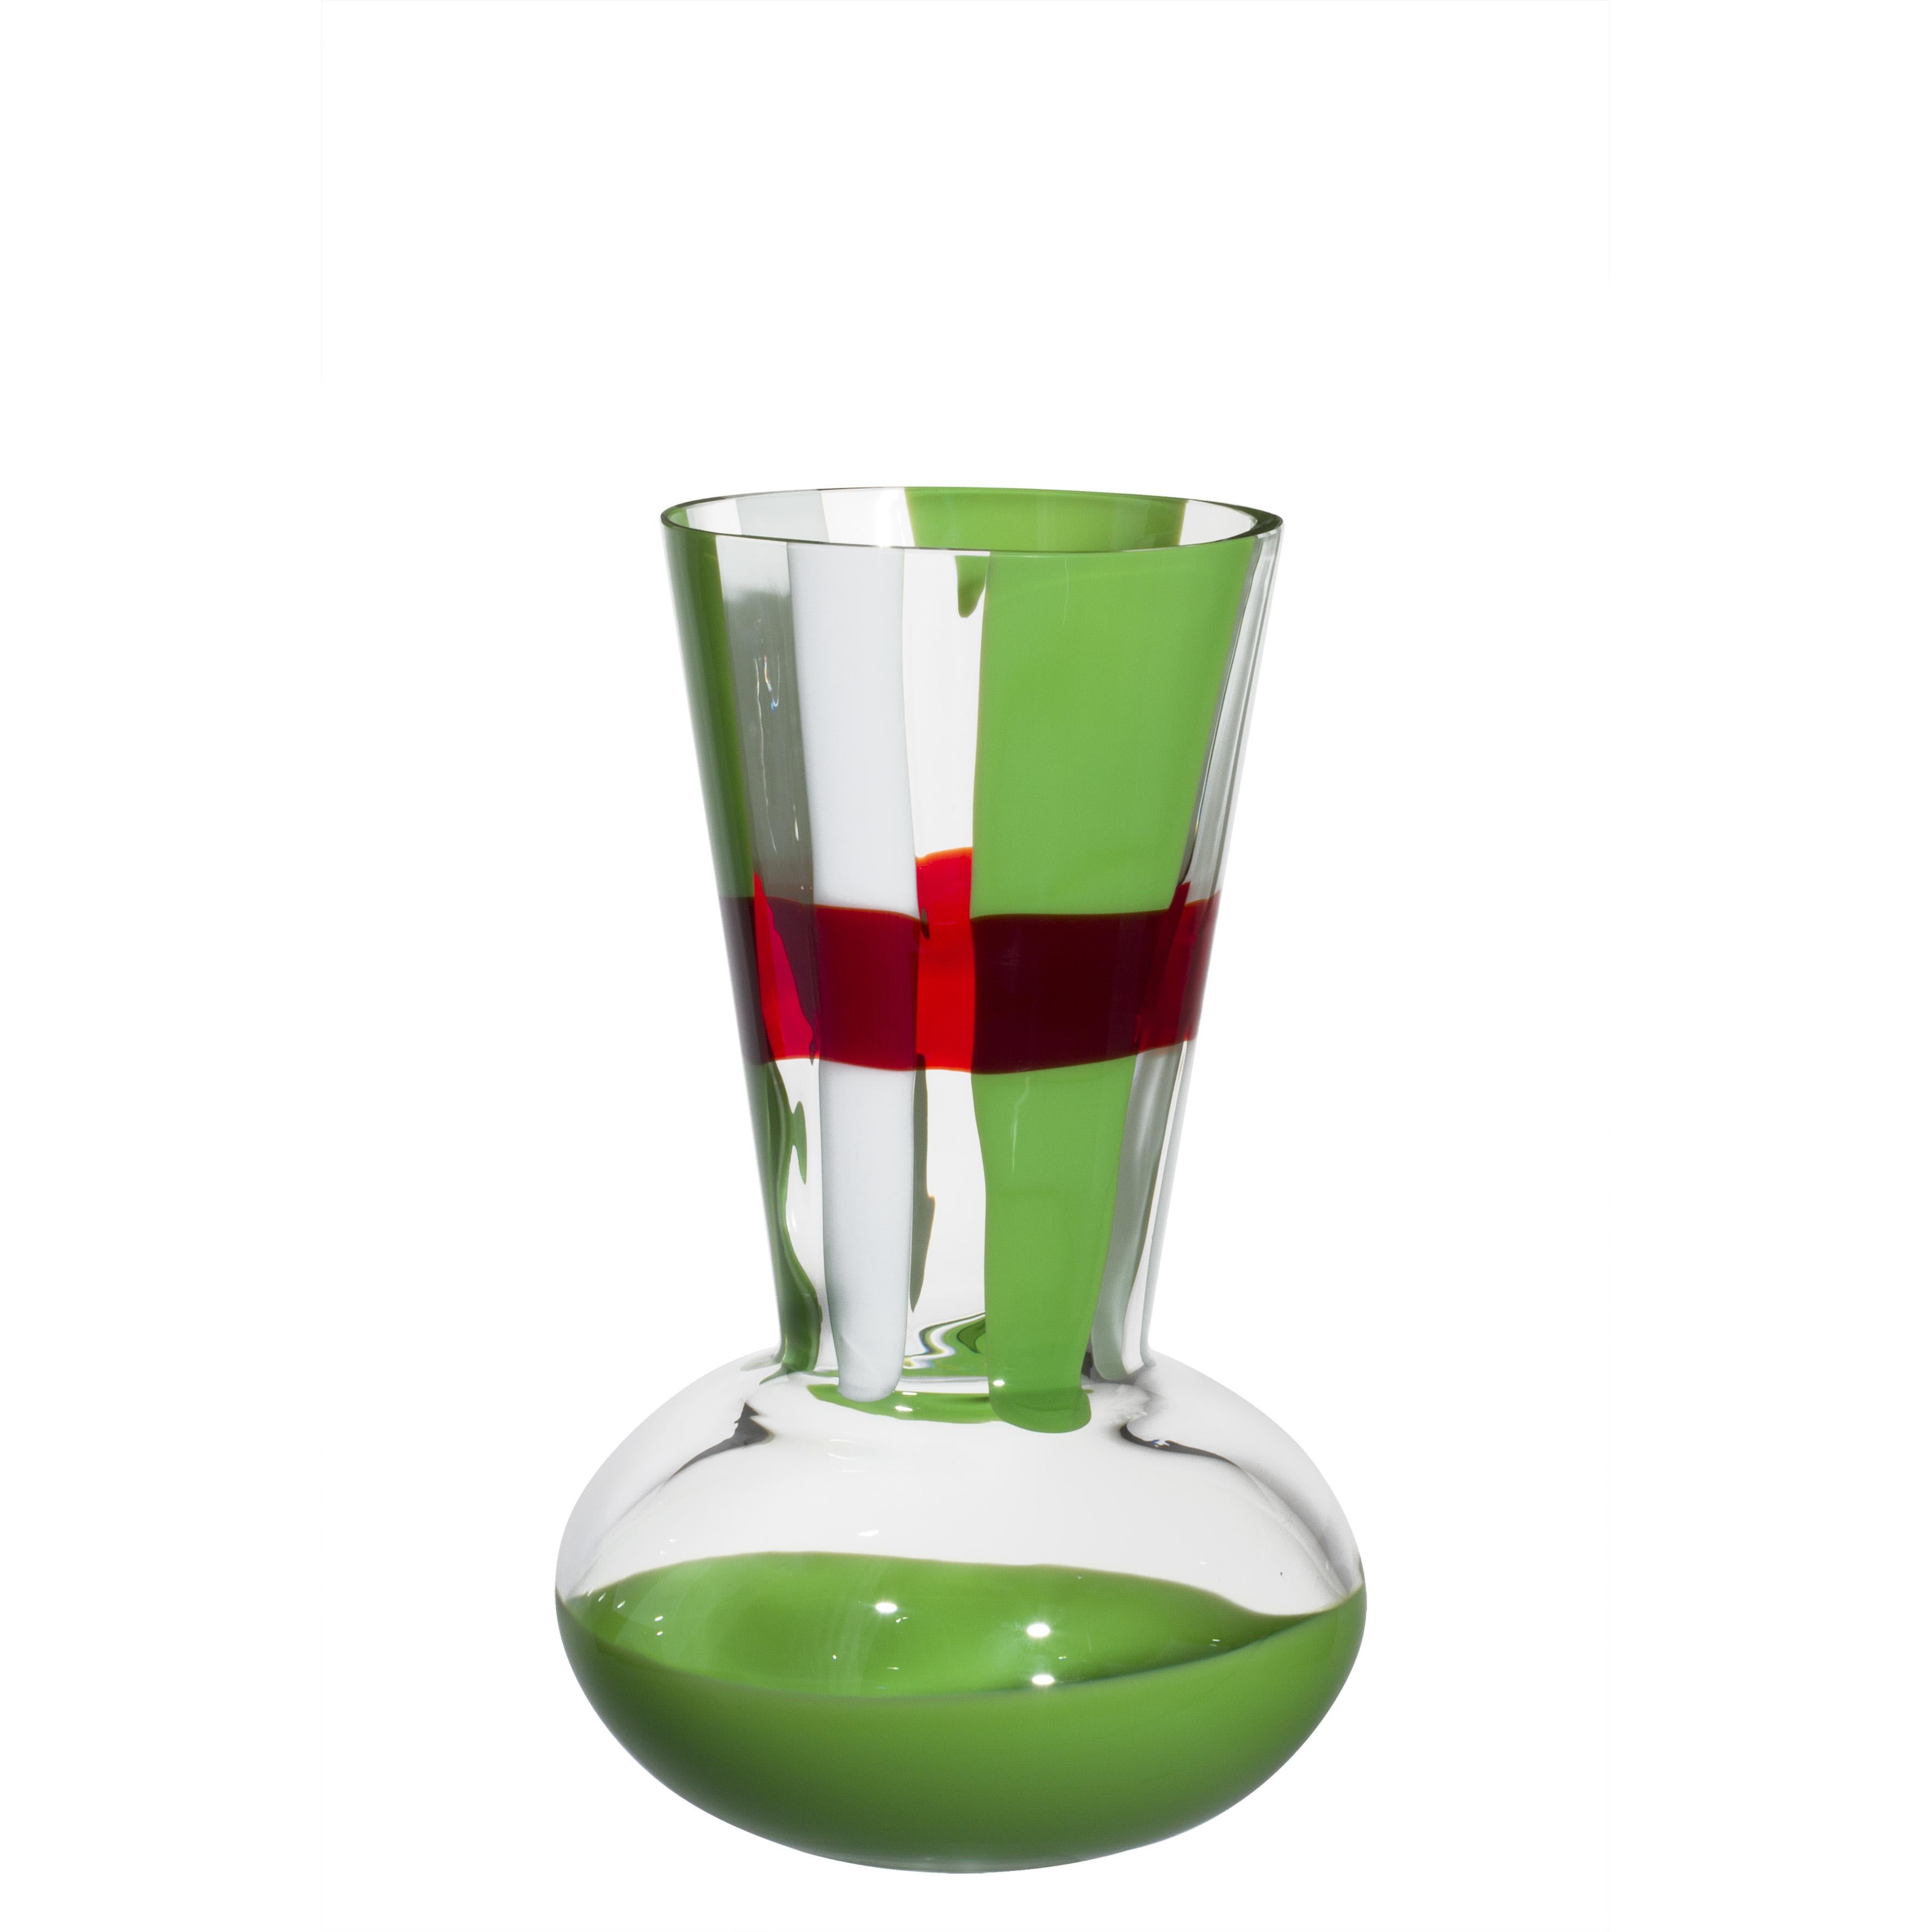 Petit vase Troncosfera rouge, vert et blanc par Carlo Moretti